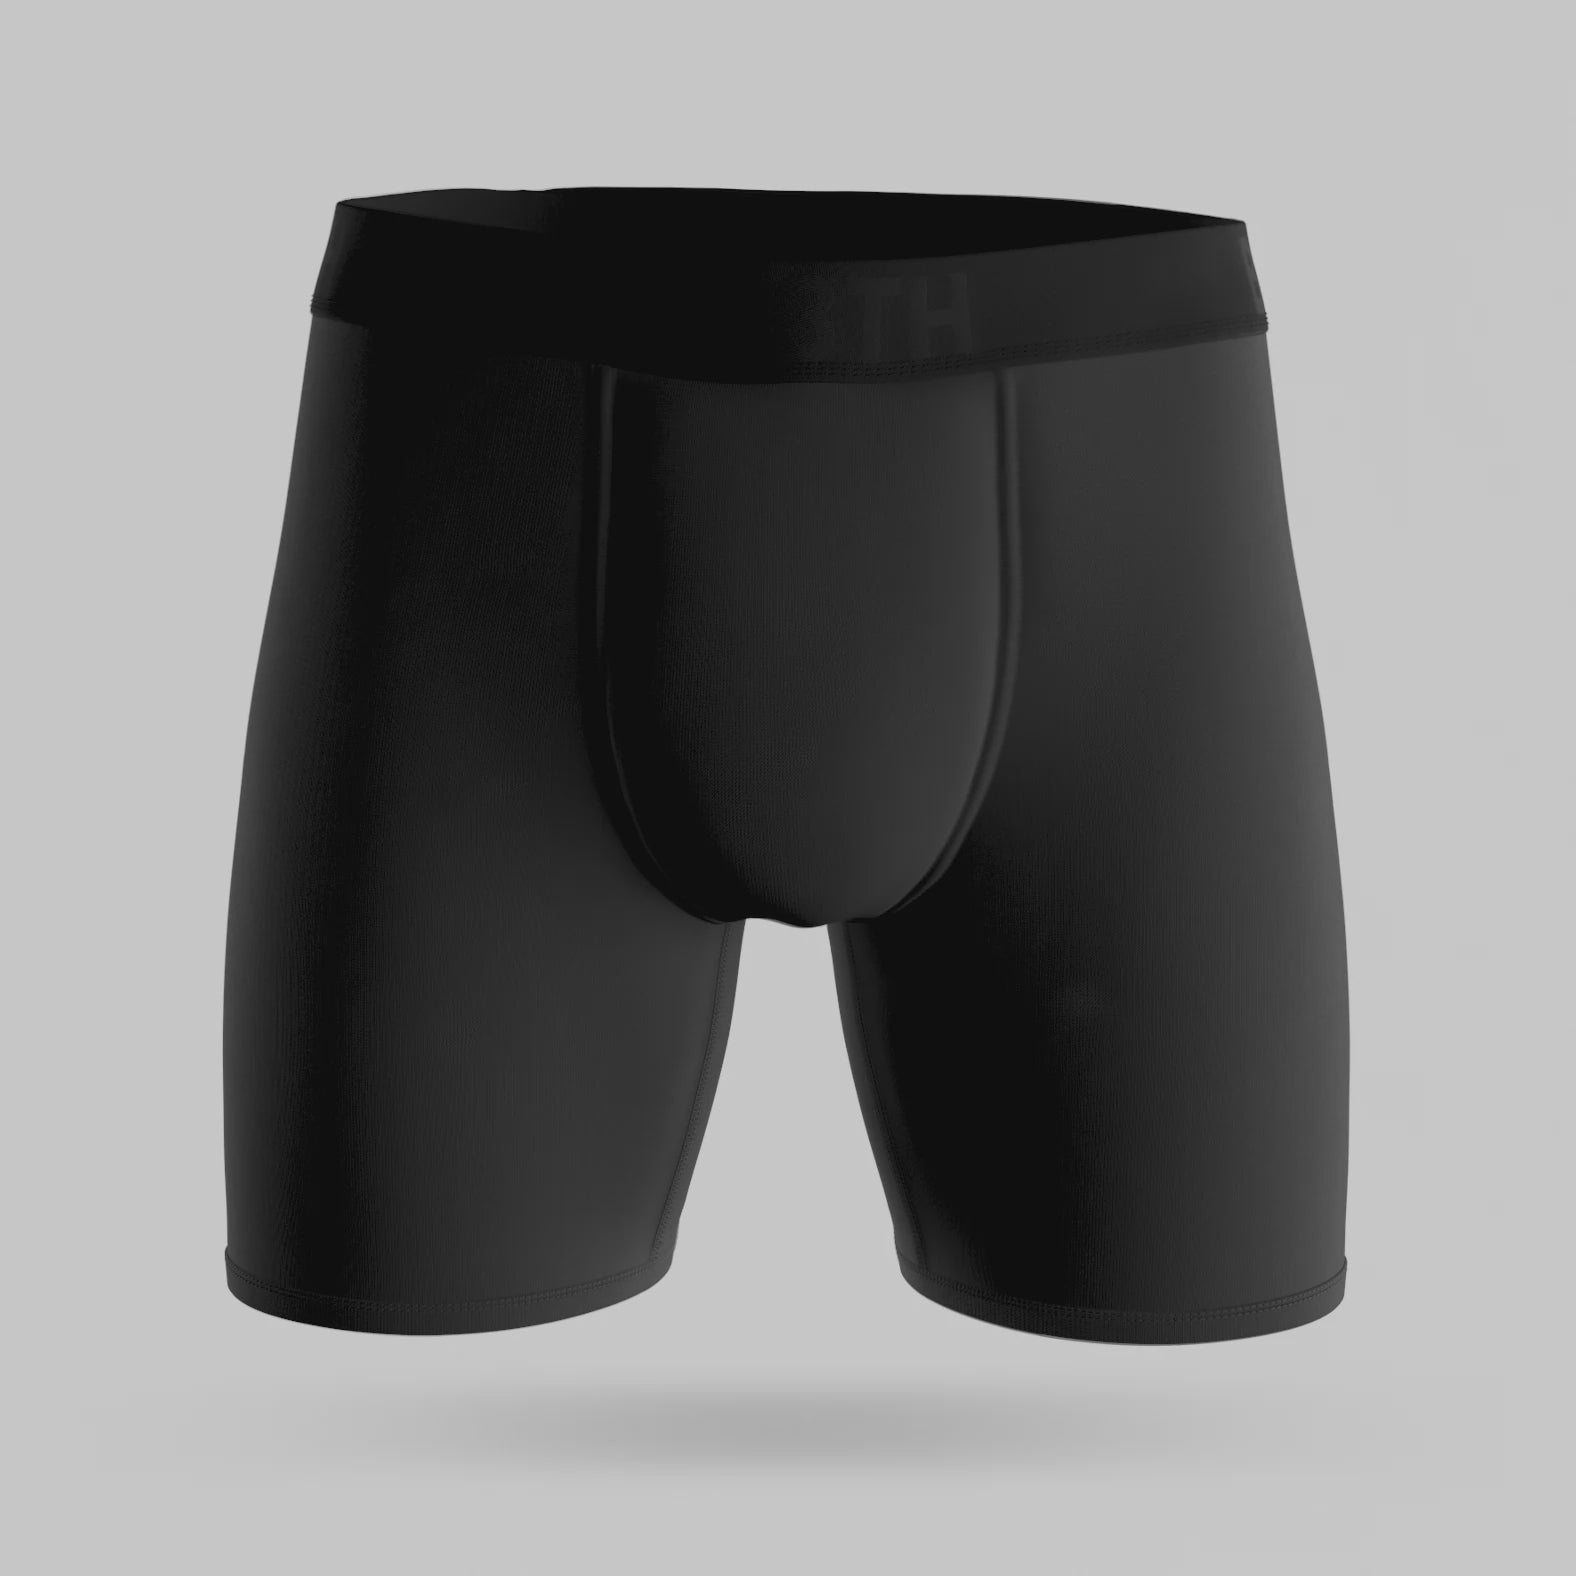 Classic Slip Briefs Underwear 100% Cotton White, Blue and Black - Noir, 48/M